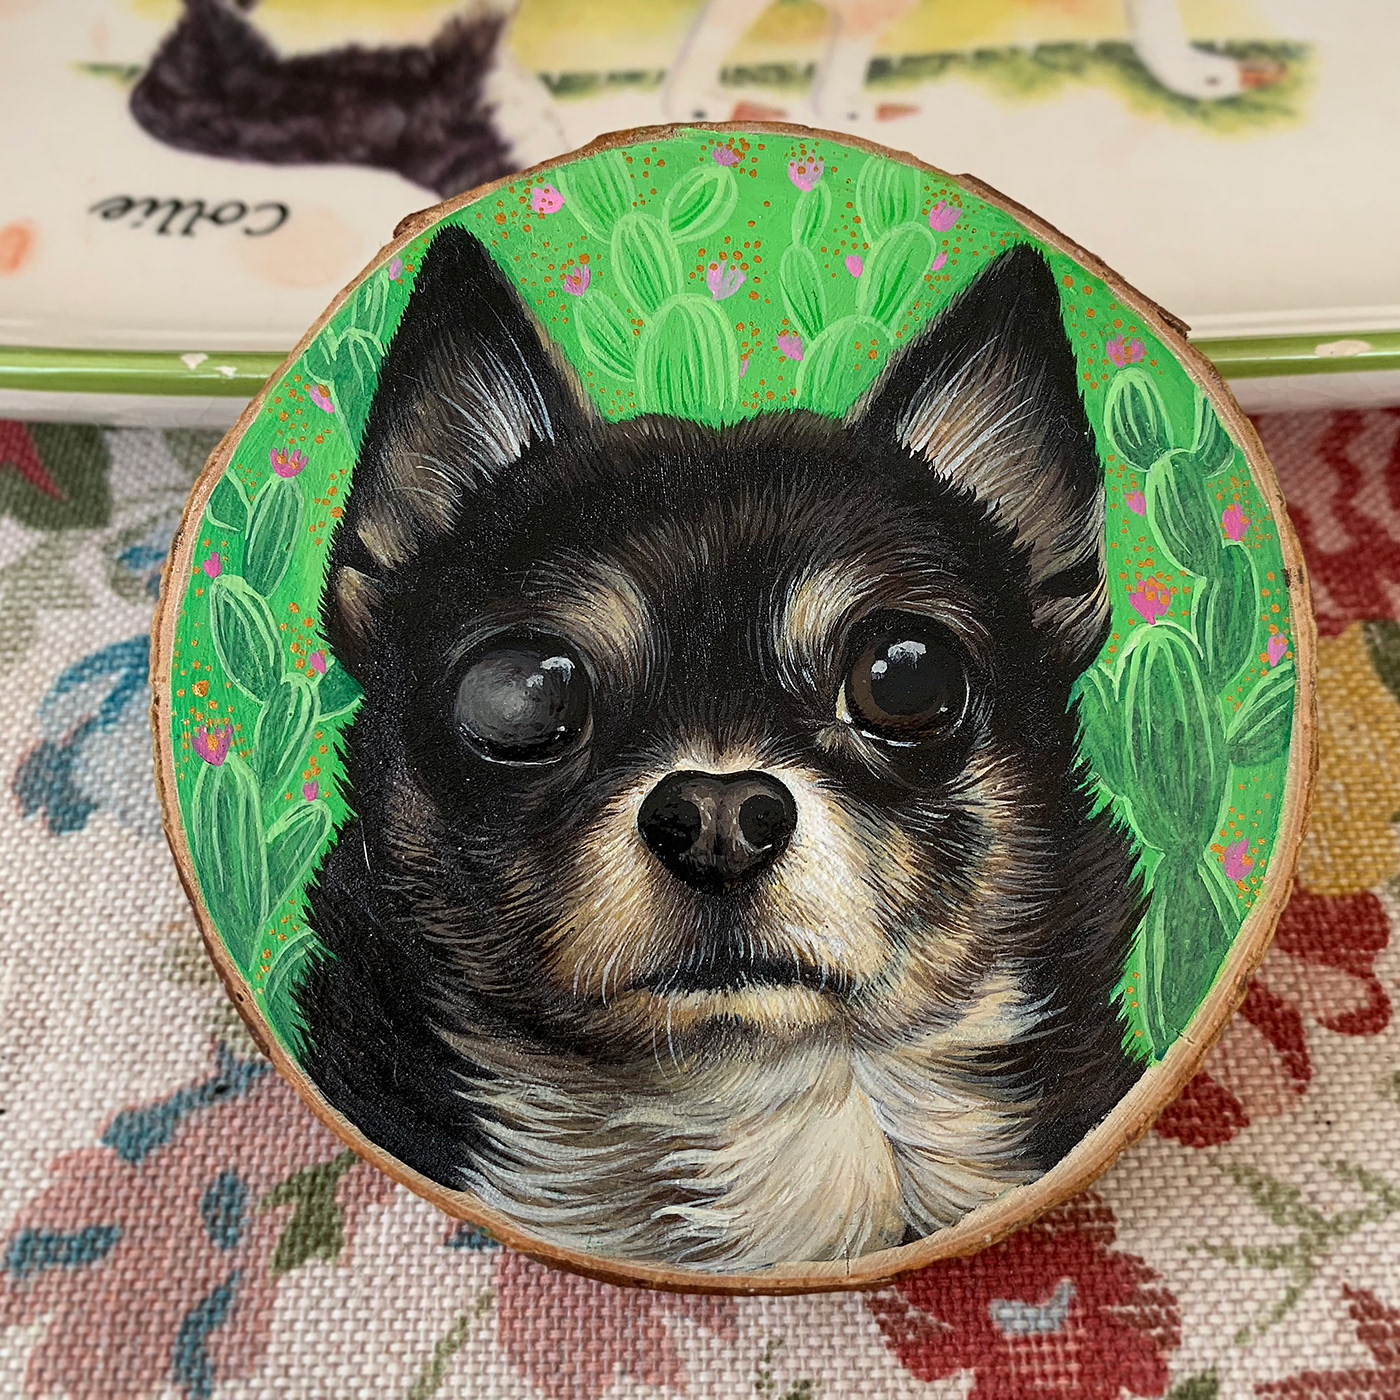 acrylic albugo chihuahua dog painting   portrait slice of wood